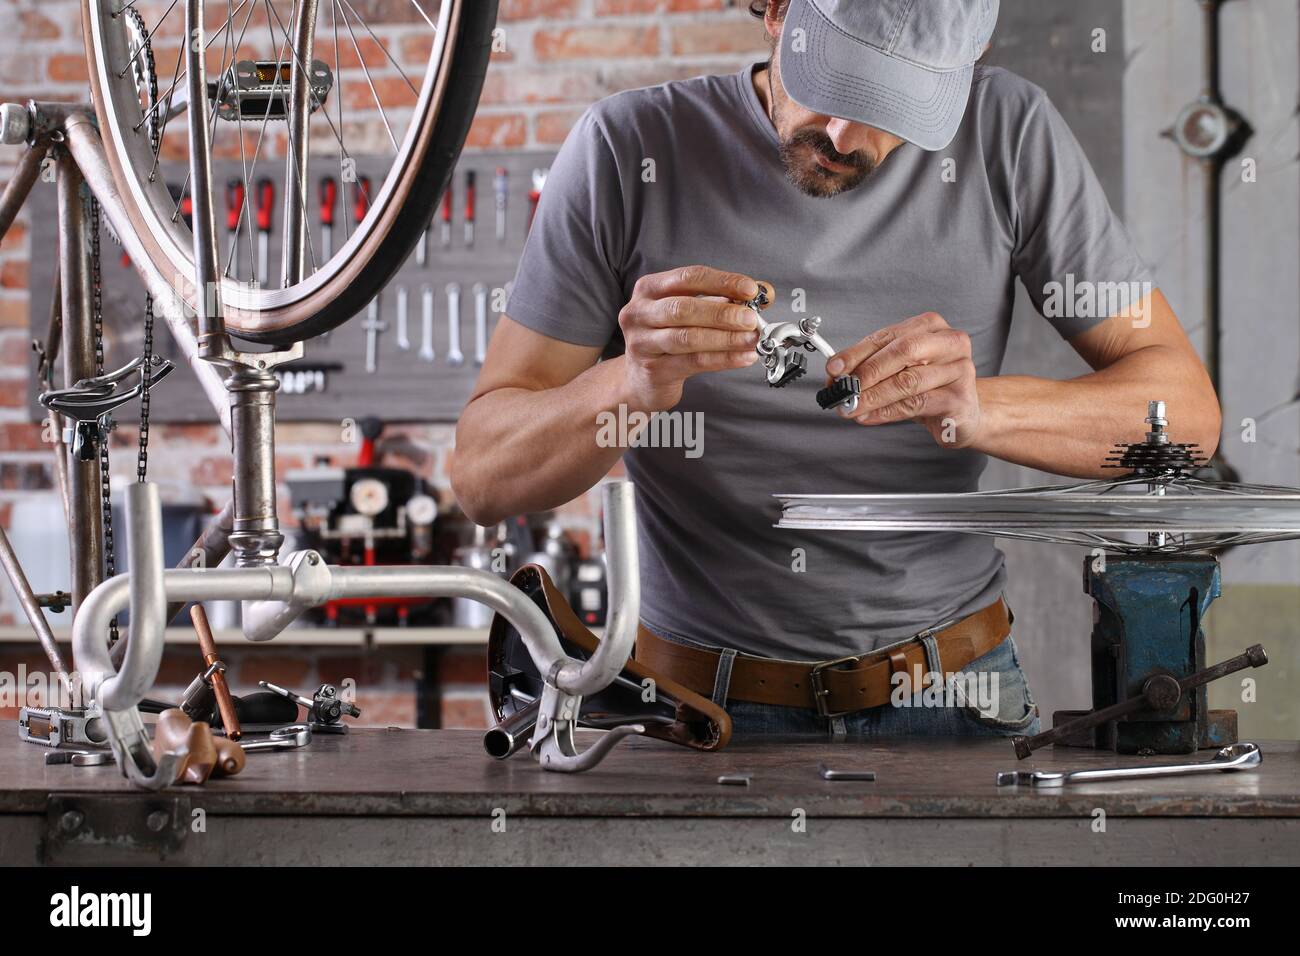 uomo riparare la bicicletta d'epoca in officina sul banco da lavoro con attrezzi, concetto fai da te Foto Stock